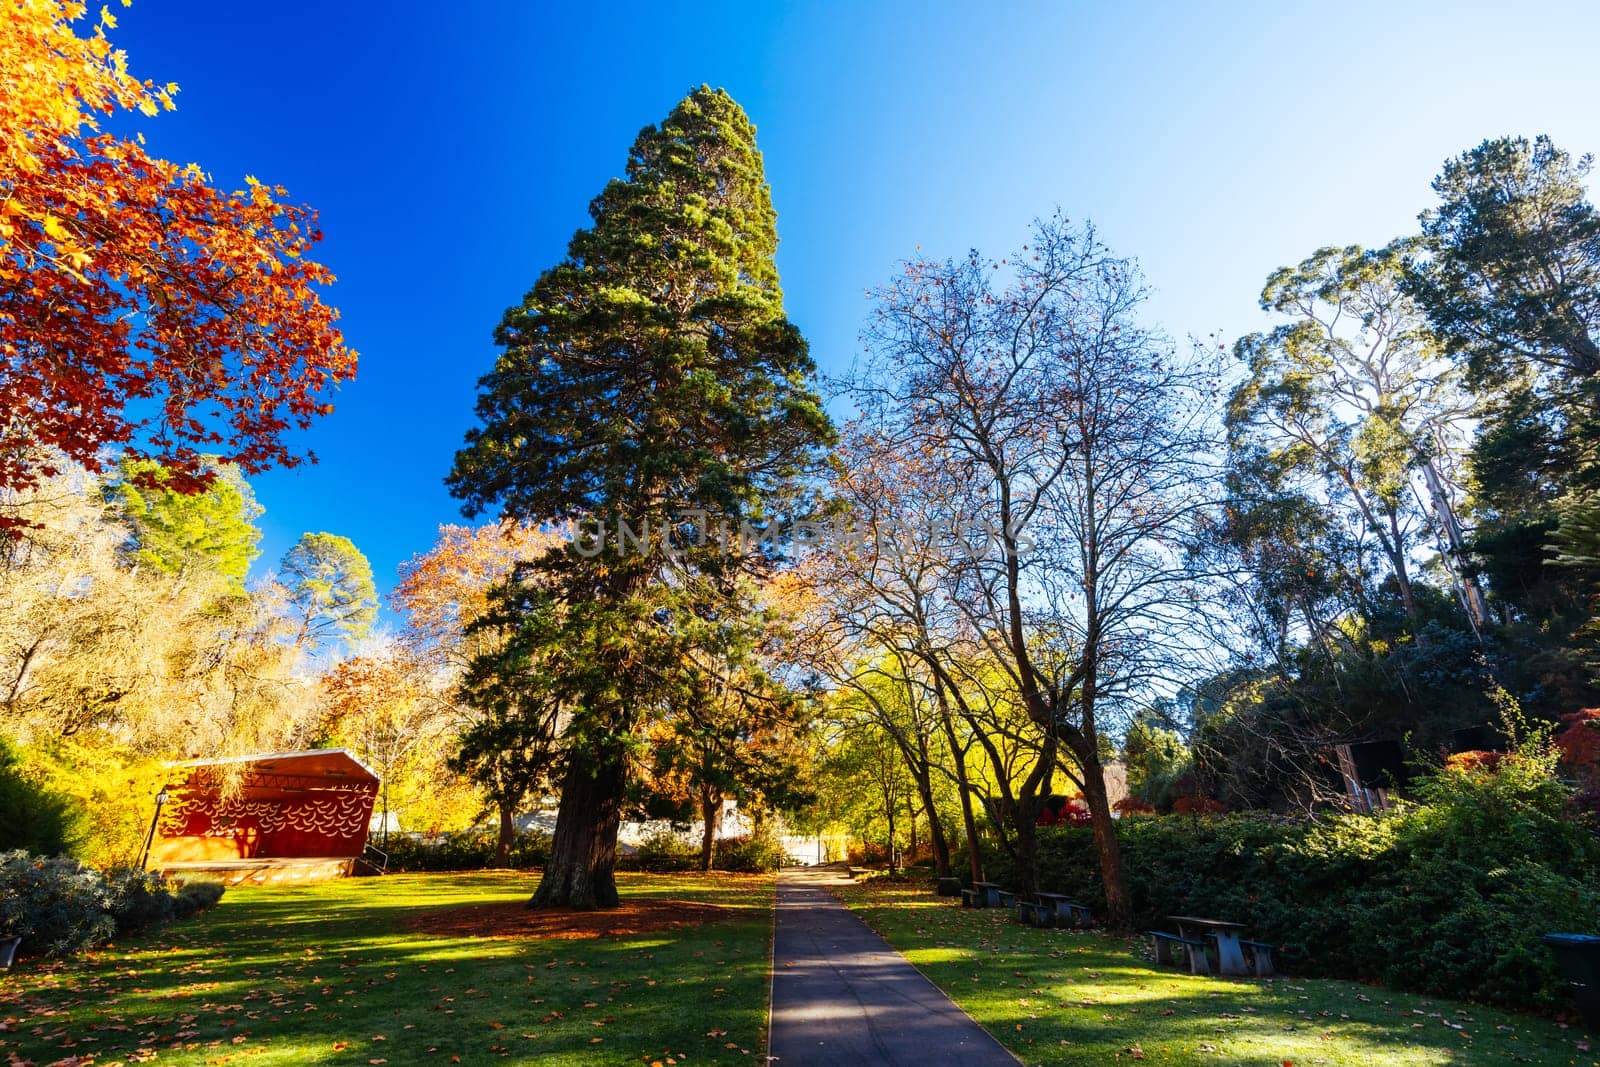 Hepburn Springs in Victoria Australia by FiledIMAGE